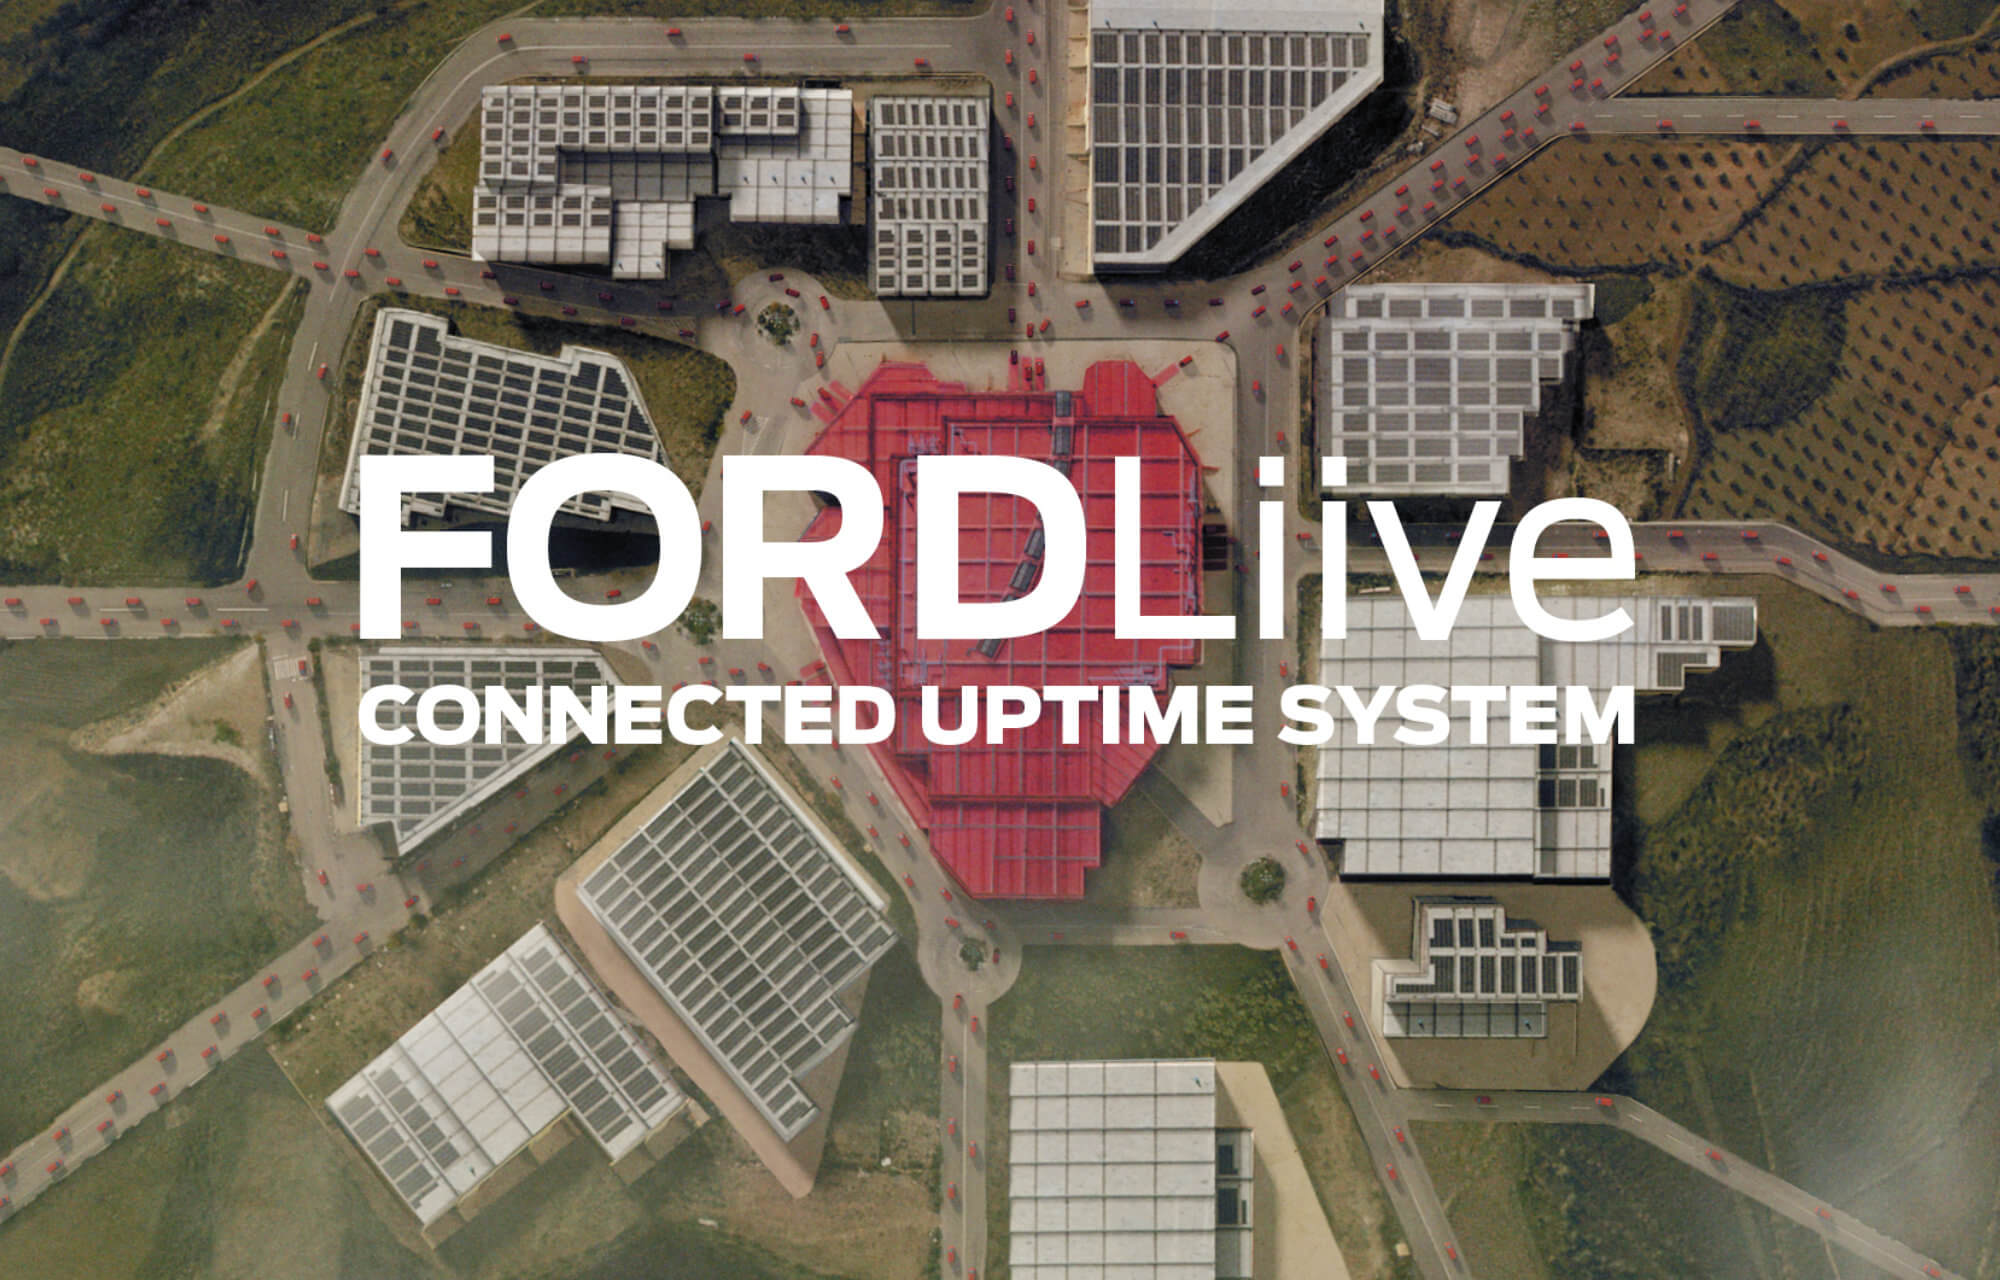 Fordin uusi FORDLiive-palvelu parantaa yritysten kaluston hyötykäyttöä ja tuottavuutta